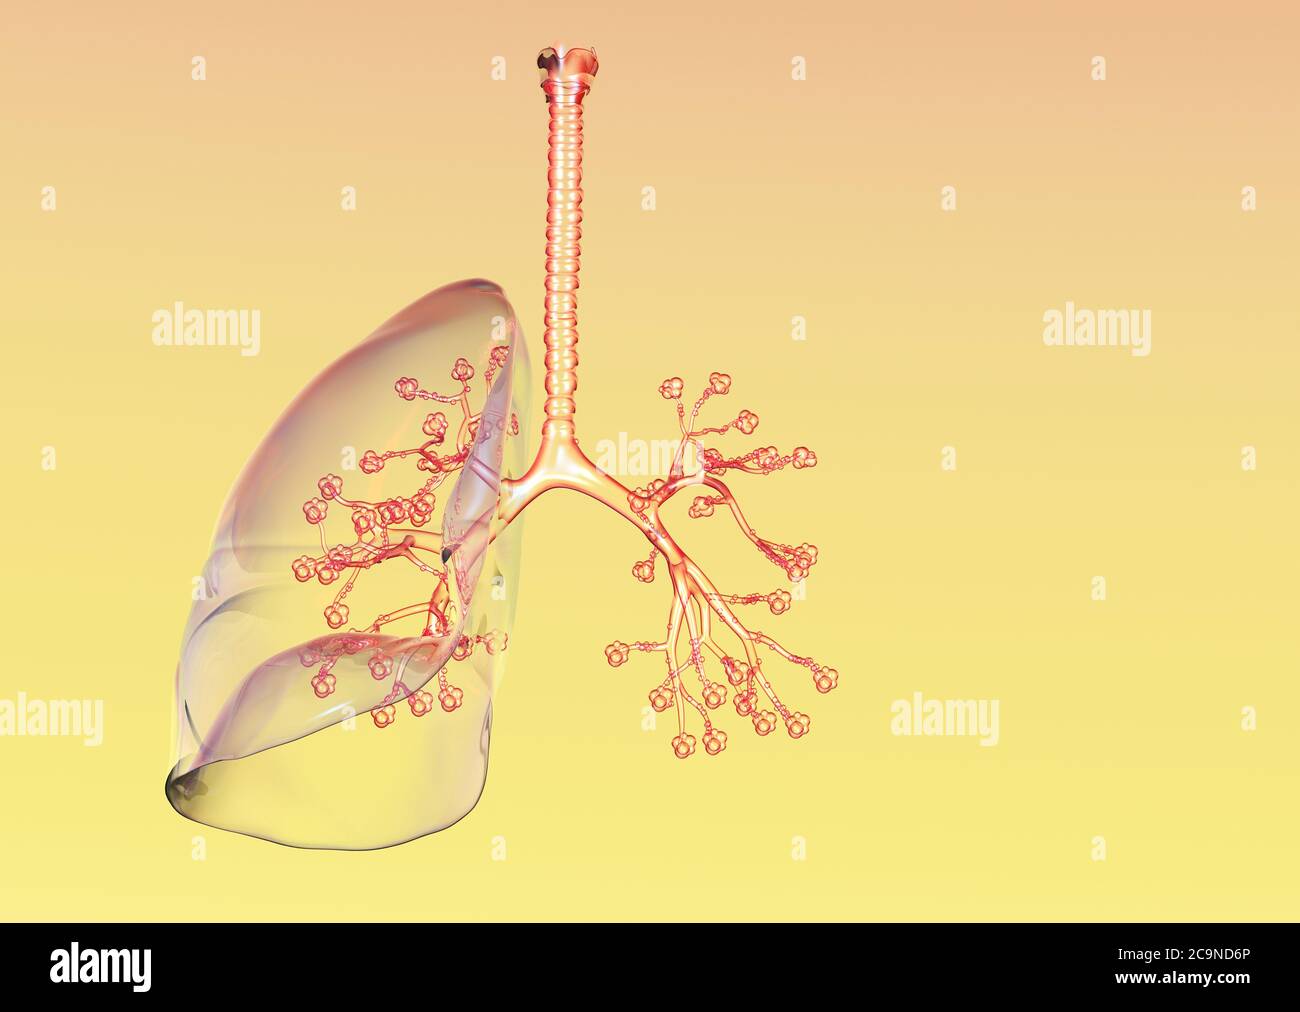 Illustrazione che mostra polmoni umani trasparenti con trachea, bronchioli e alveoli polmonari Foto Stock